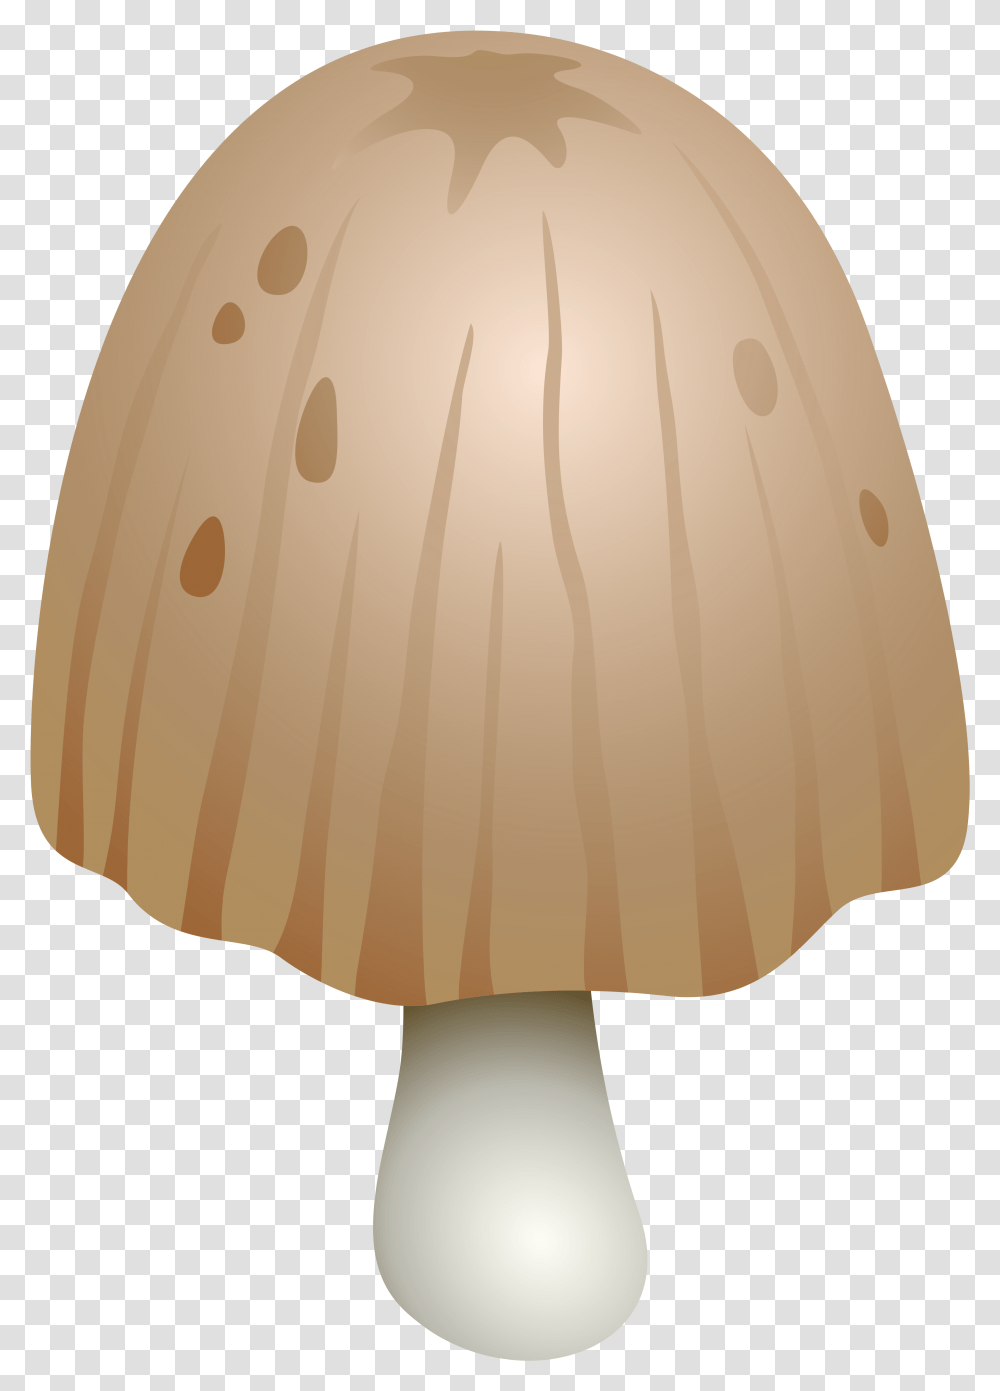 Coprinus Comatus Mushroom Clipart, Lamp, Lampshade, Plant, Fungus Transparent Png